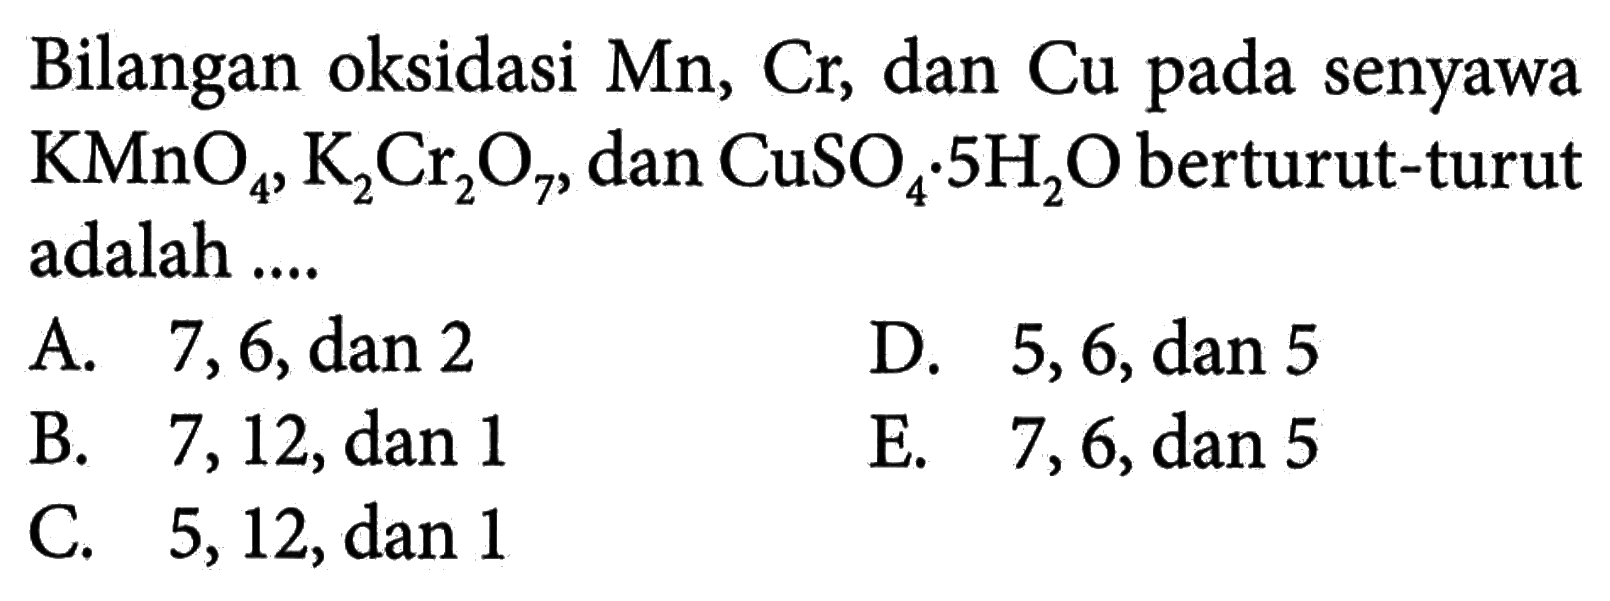 Bilangan oksidasi Mn, Cr, dan Cu pada senyawa KMnO4, K2Cr2O7, dan CuSO4 . 5 H2O berturut-turut adalah